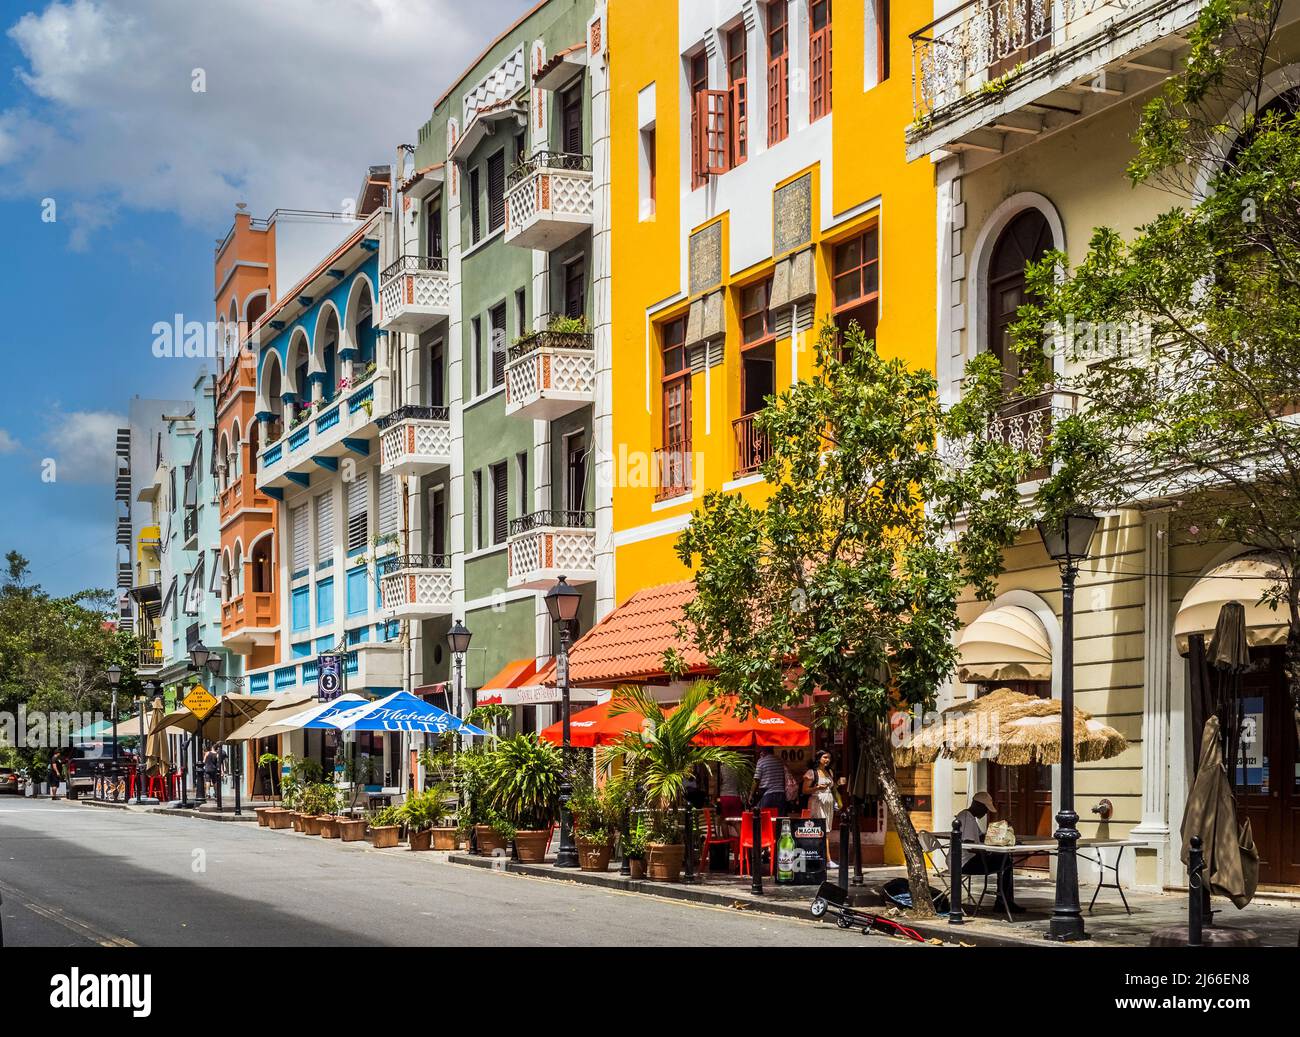 Colorful street scene in Old San Juan Puerto Rico Stock Photo